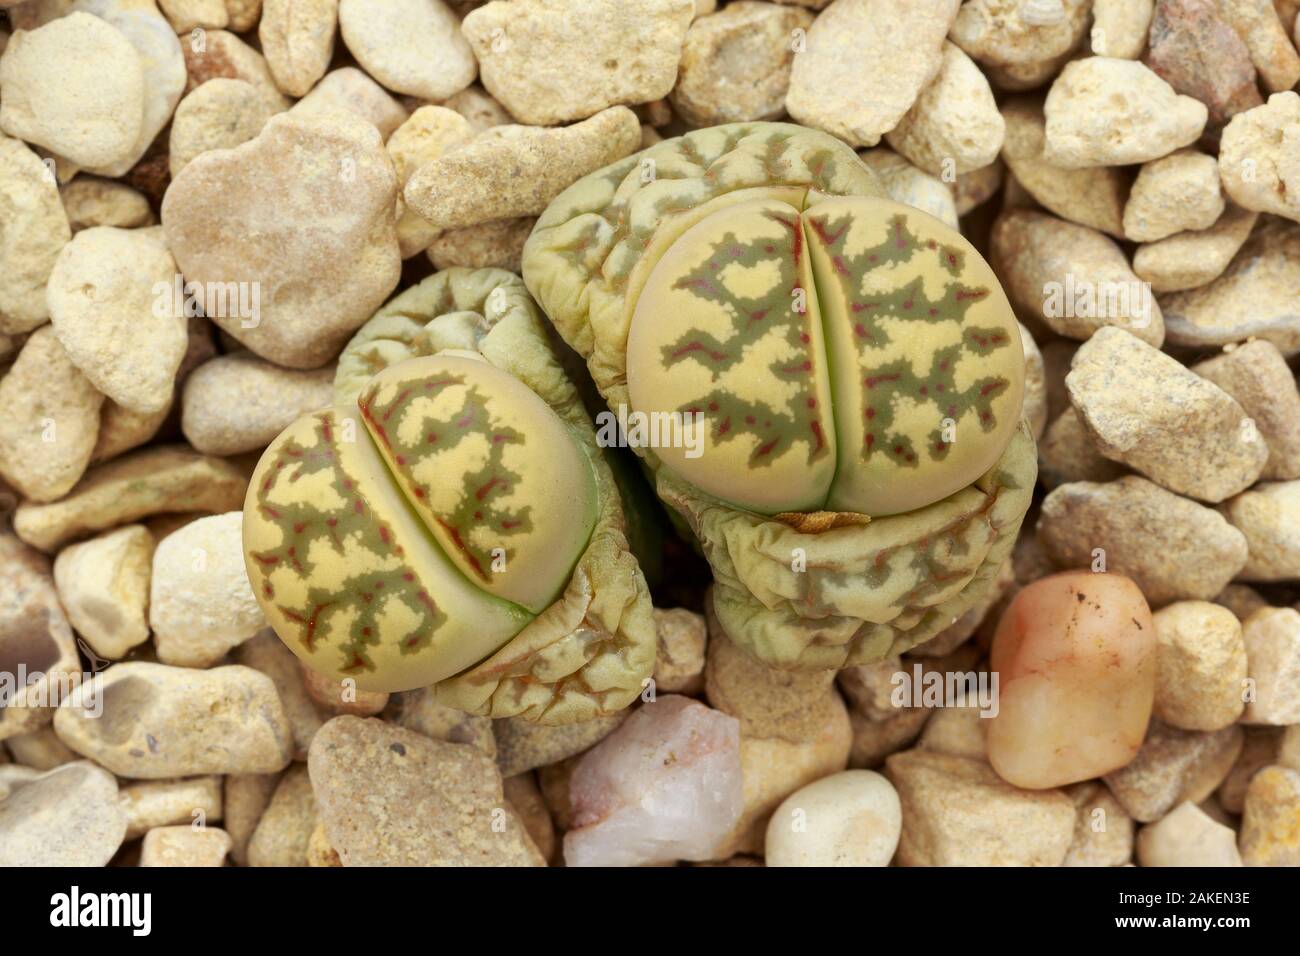 Lebende Steine (Lithops dorotheae) einer der "Pflanzen lebendige Steine', im Anbau. Es ist in der Übergangsphase, mit der alten Blätter welken und neue entstehen. Heimisch in Südafrika. Stockfoto